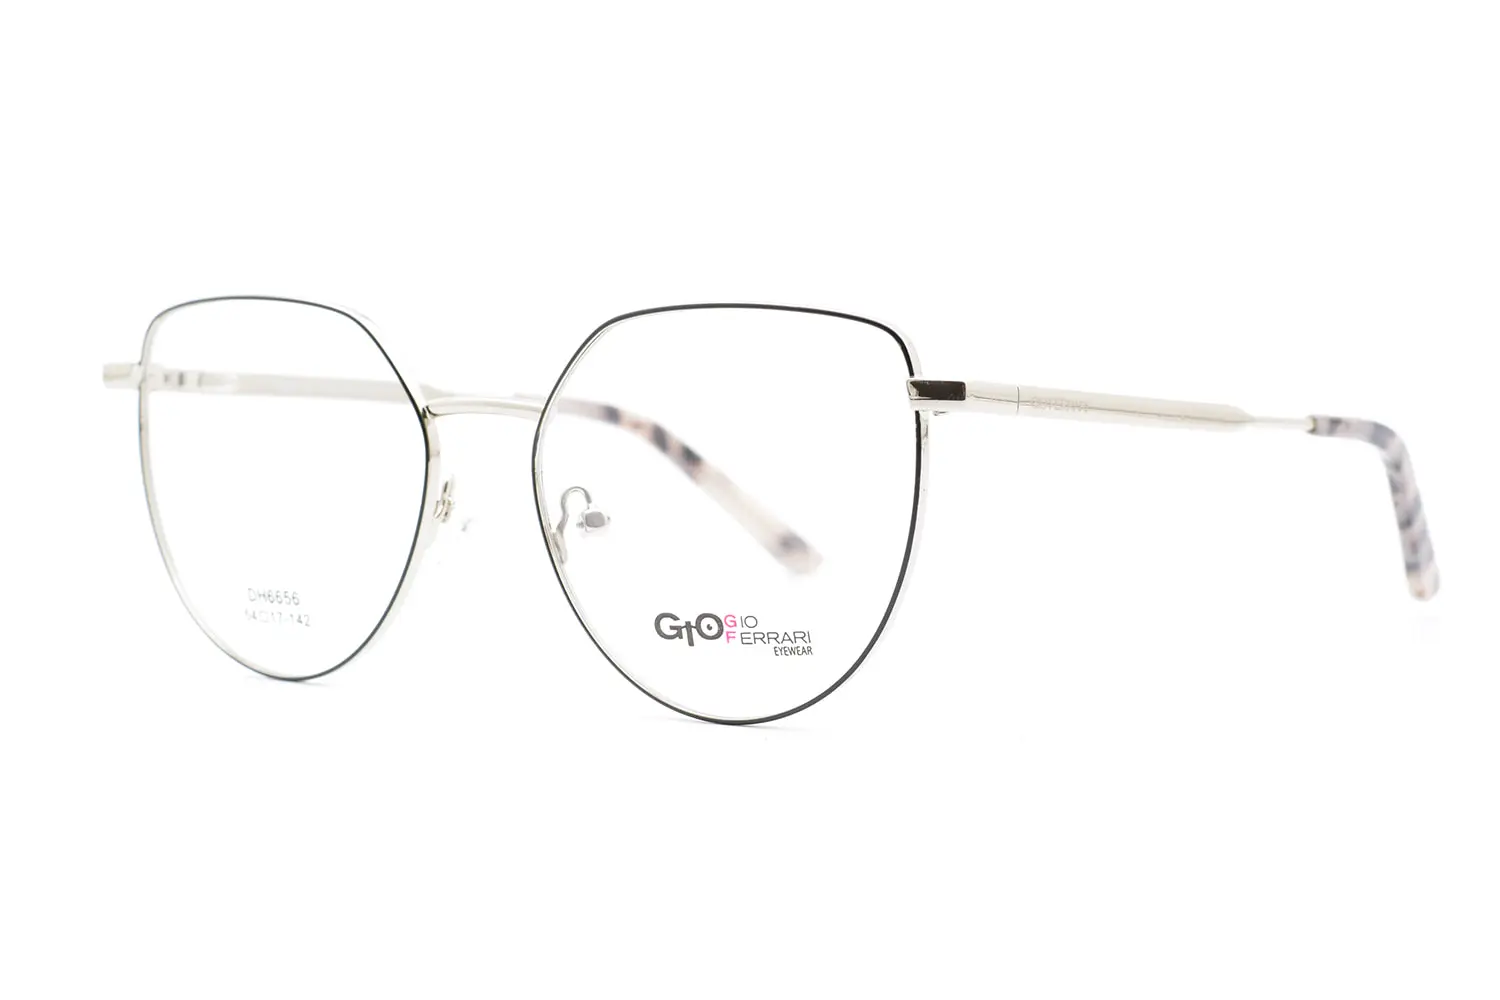 خرید عینک طبی زنانه Gio Ferrari dh6656 c4